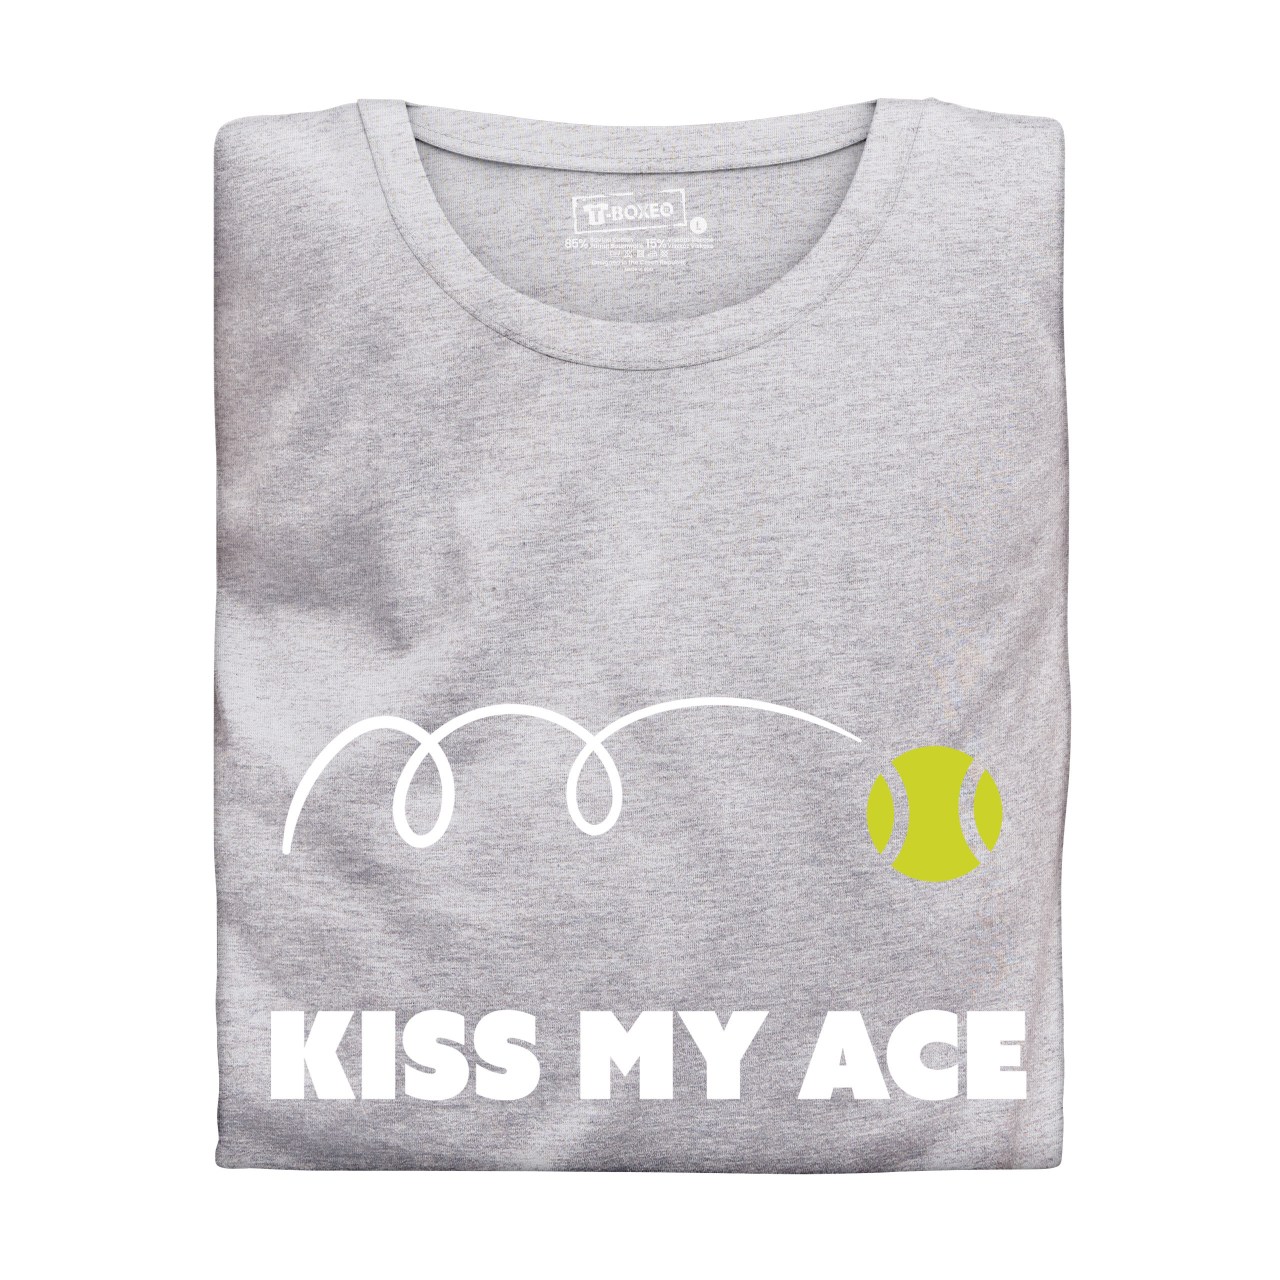 Dámské tričko s potiskem "Kiss my ace"